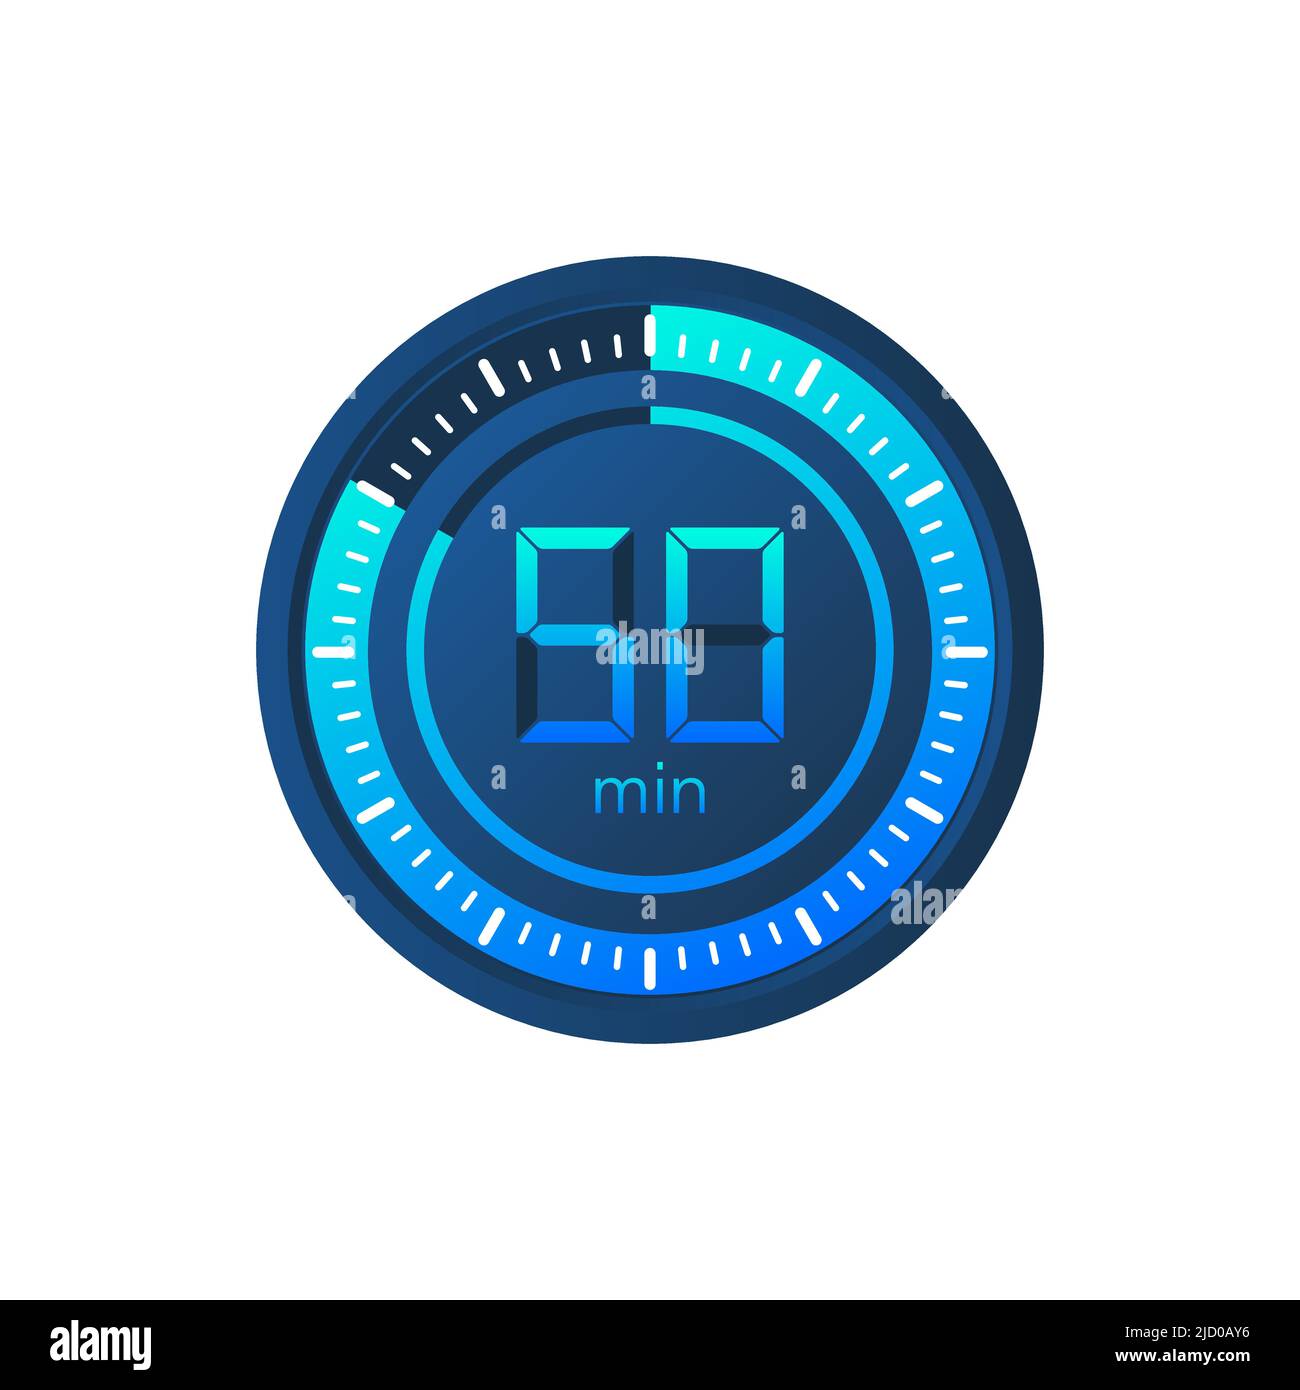 L'icône de vecteur chronomètre de 50 minutes. Icône de chronomètre de style plat sur fond blanc. Illustration du stock vectoriel. Illustration de Vecteur